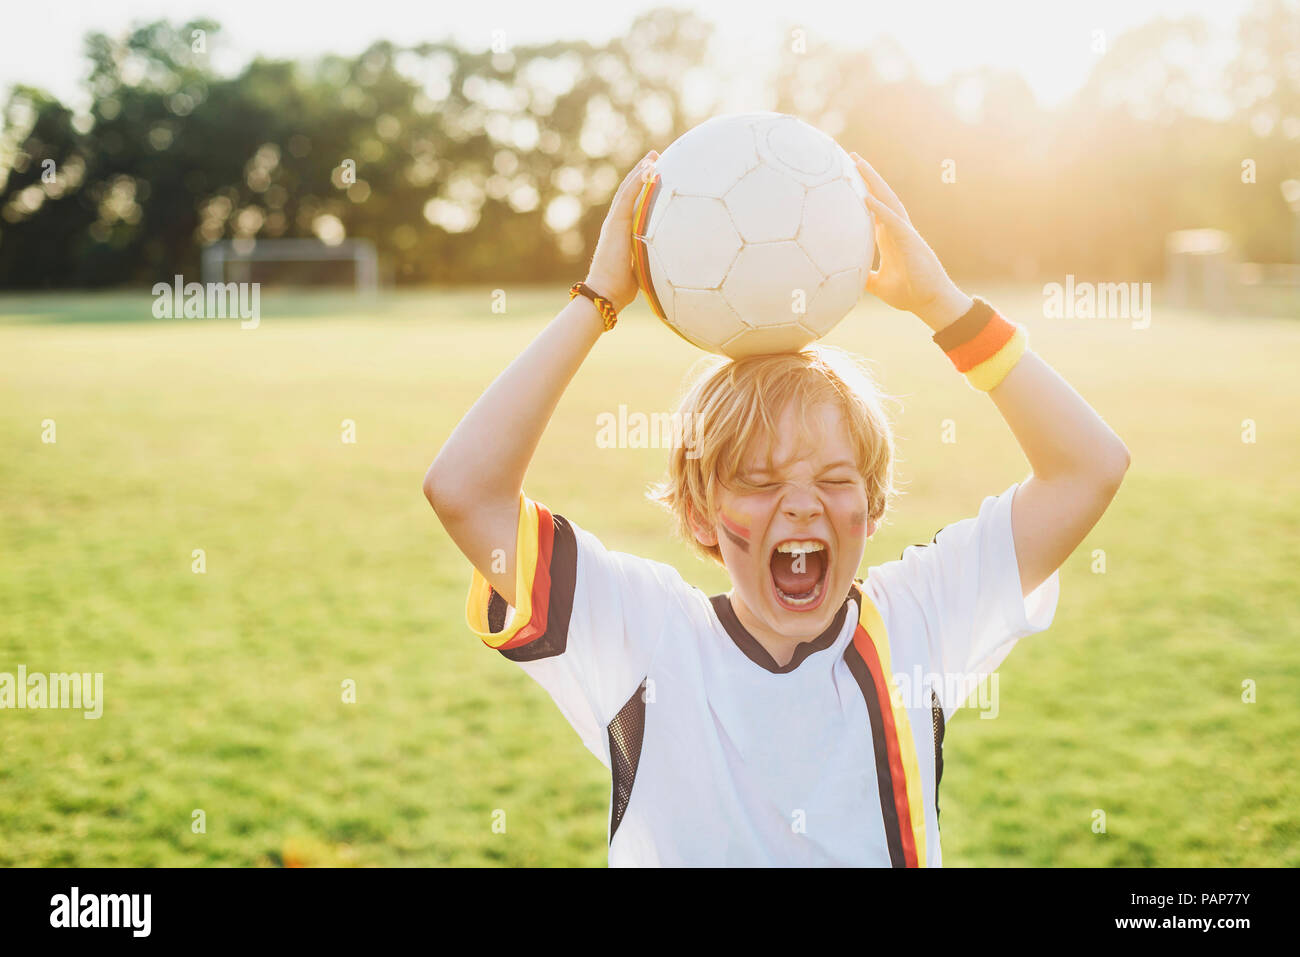 Junge tragen Deutsche Fussball shirt schreien vor Freude Stockfoto